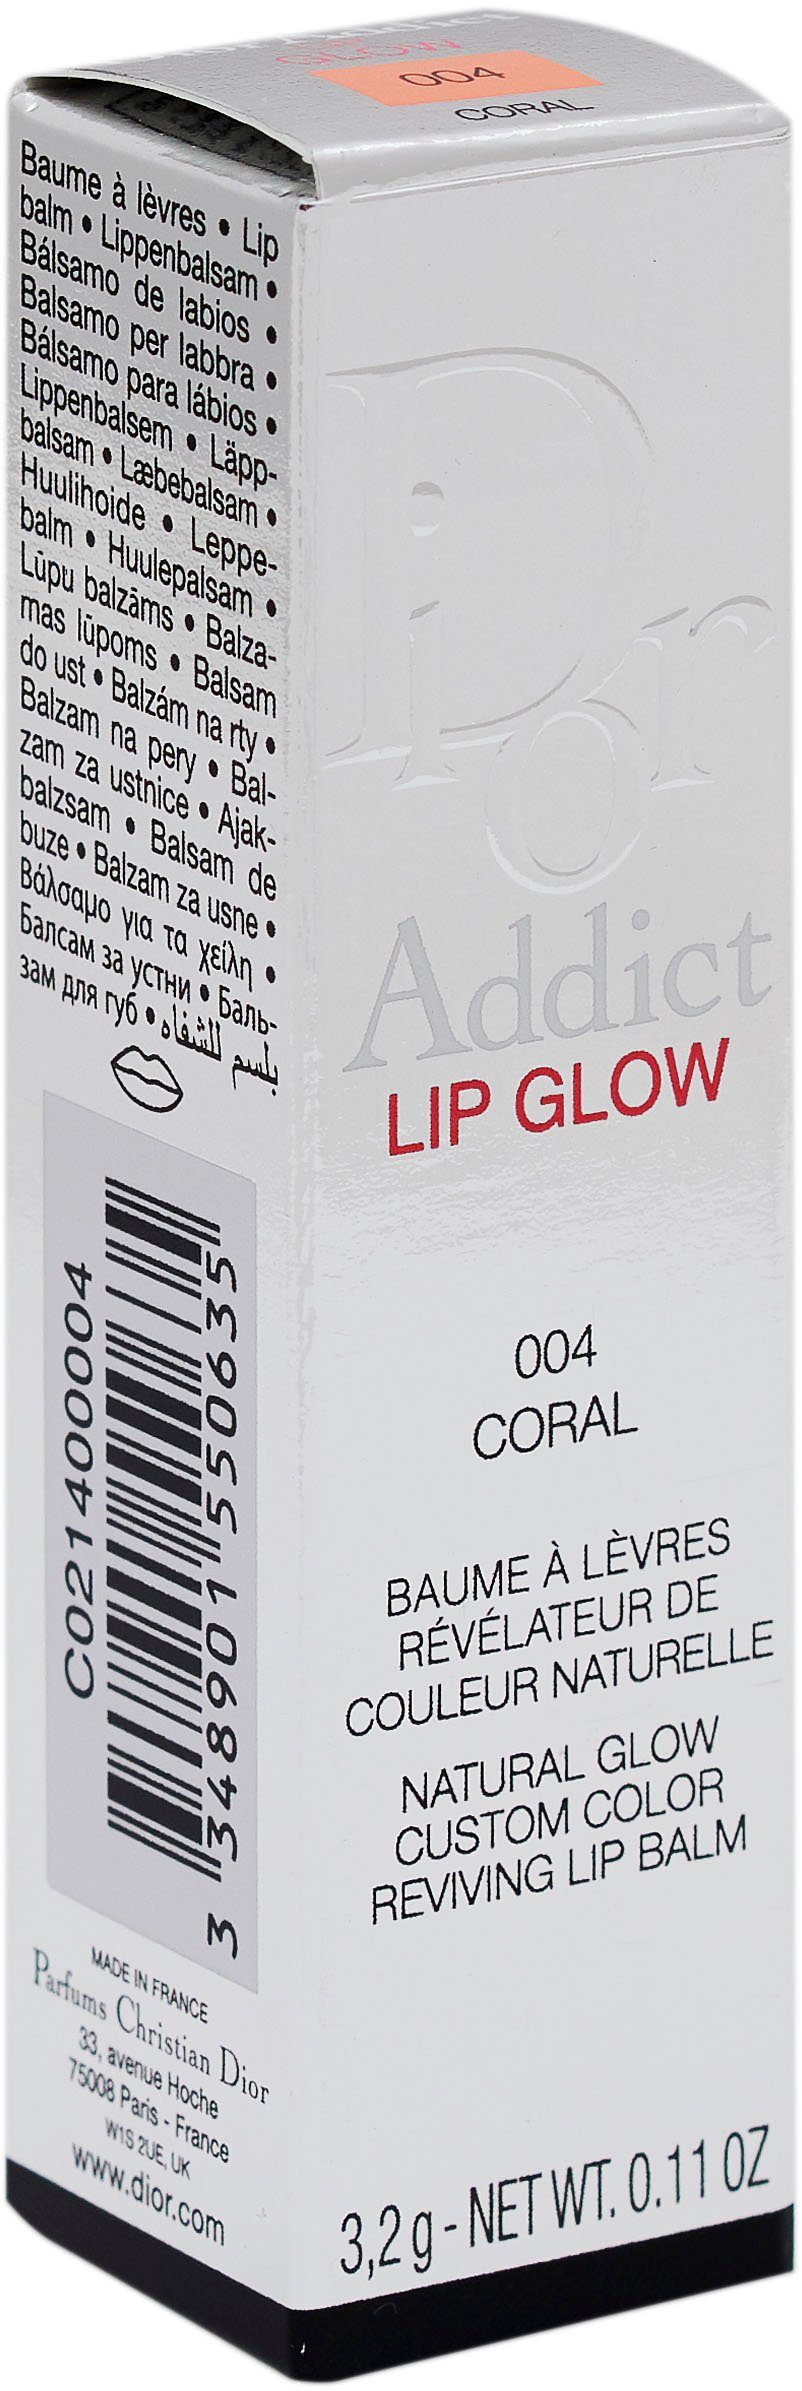 Dior Lippenbalsam Dior 004 Addict Glow Coral Lip